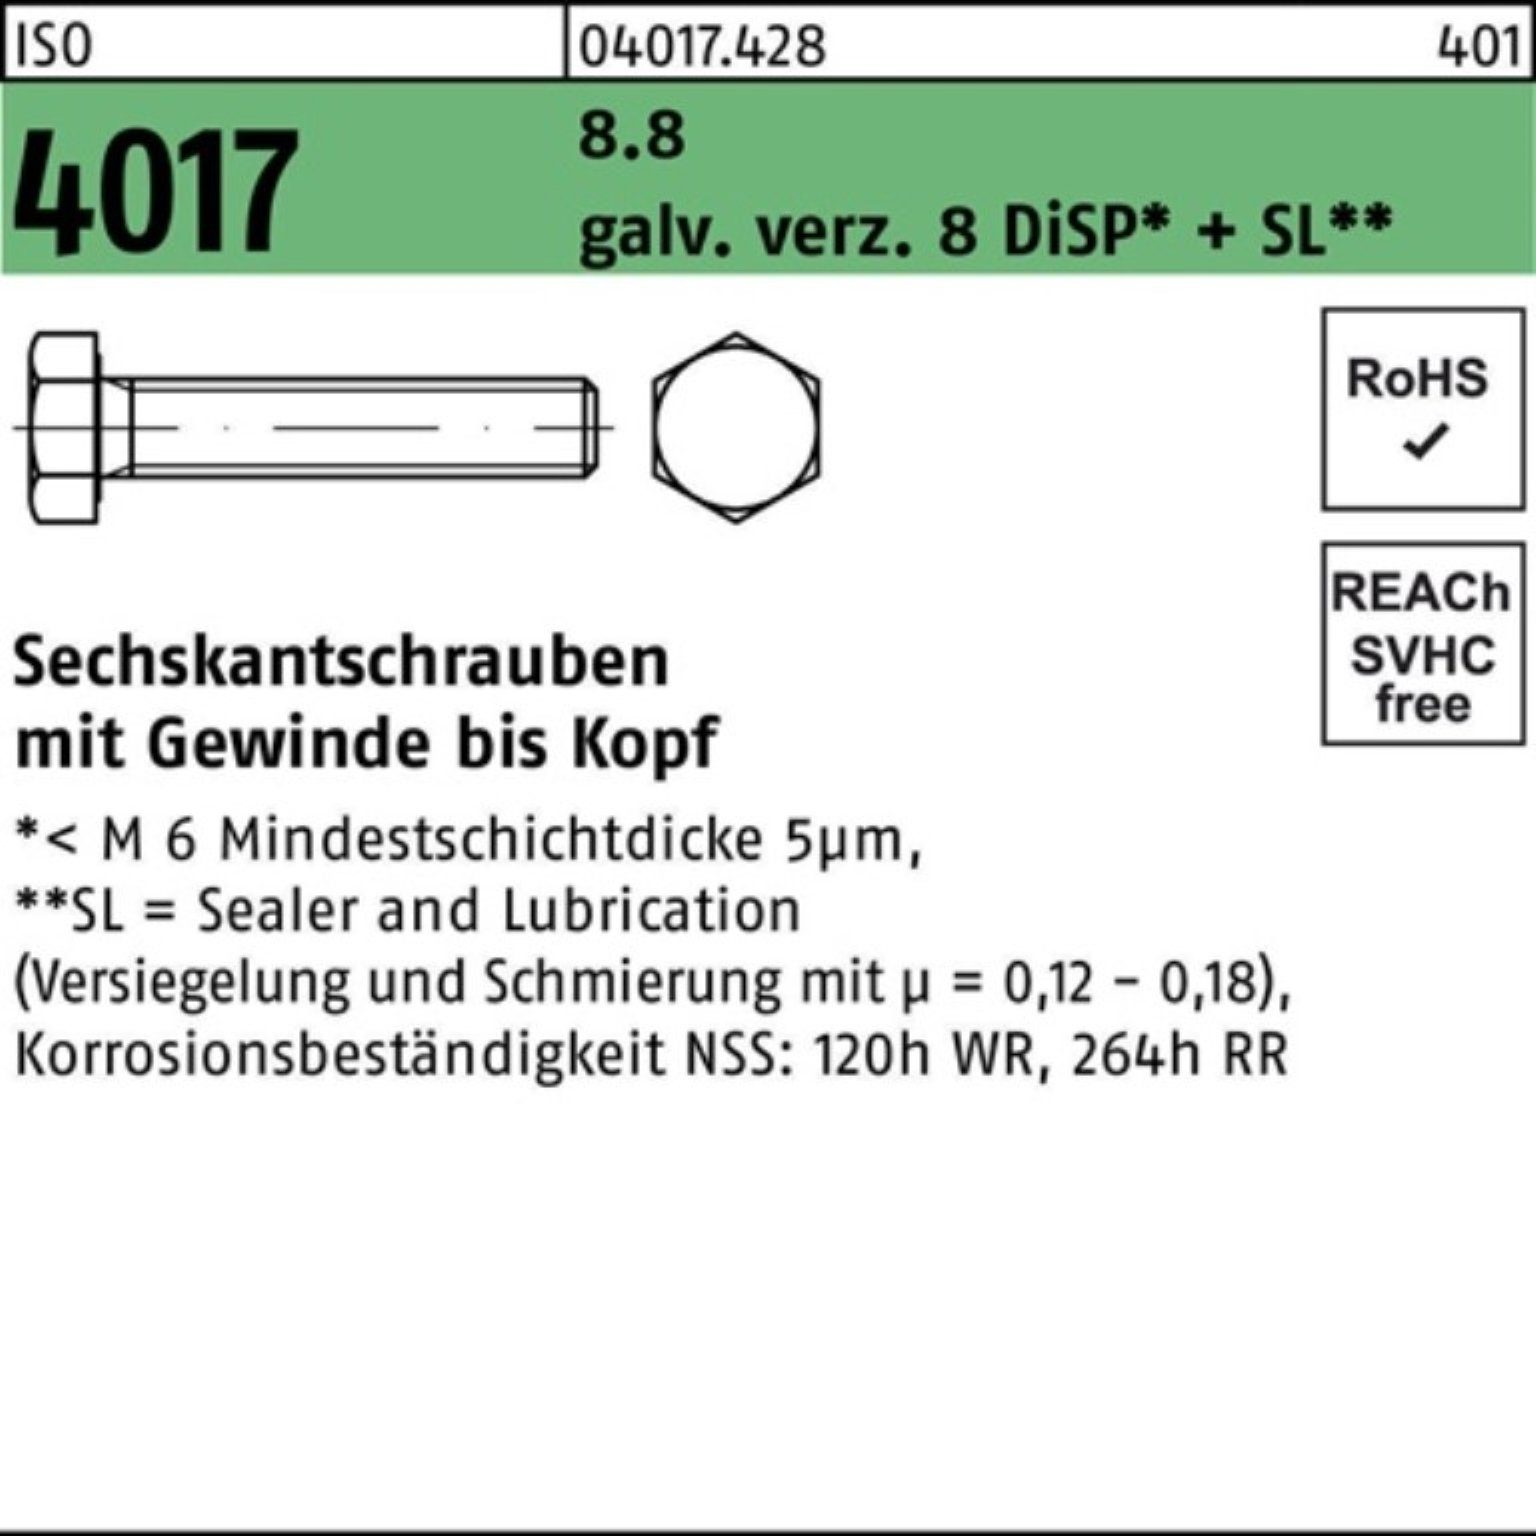 Pack VG Bufab galv.verz. 25 Sechskantschraube 4017 500er Sechskantschraube ISO 8 DiSP+ M6x 8.8